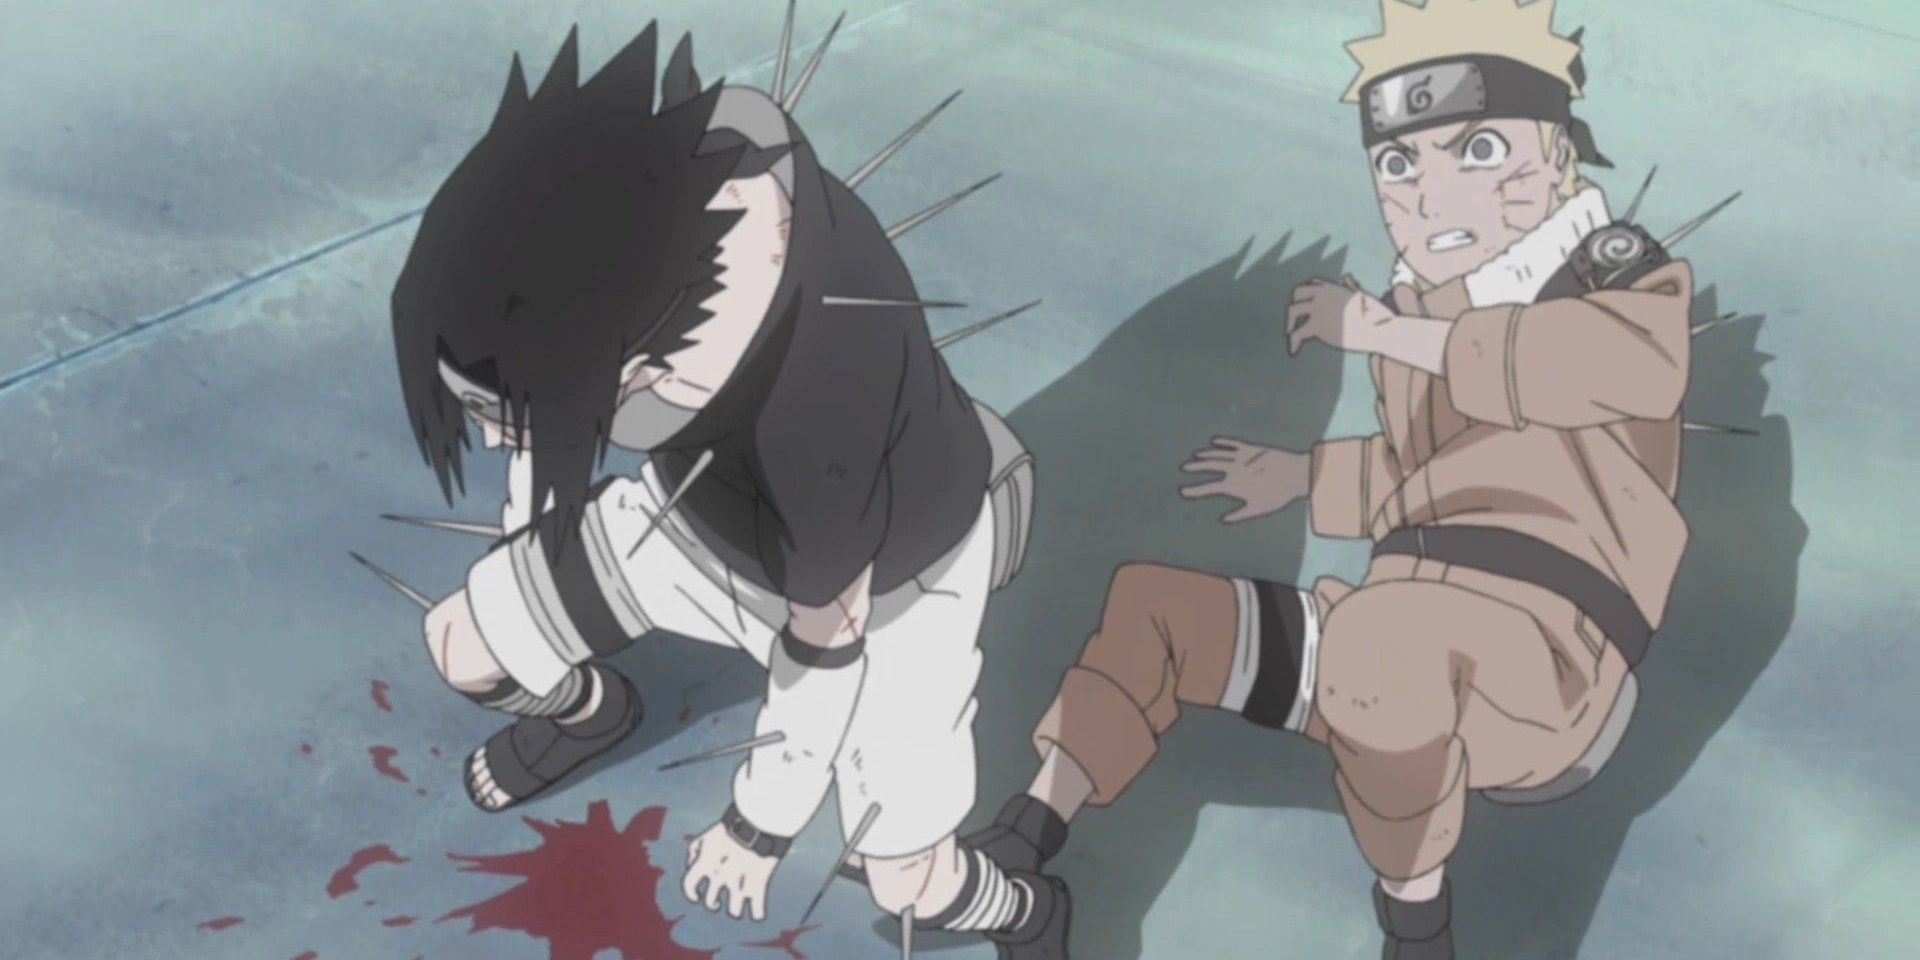 sasuke defends naruto from haku's attack